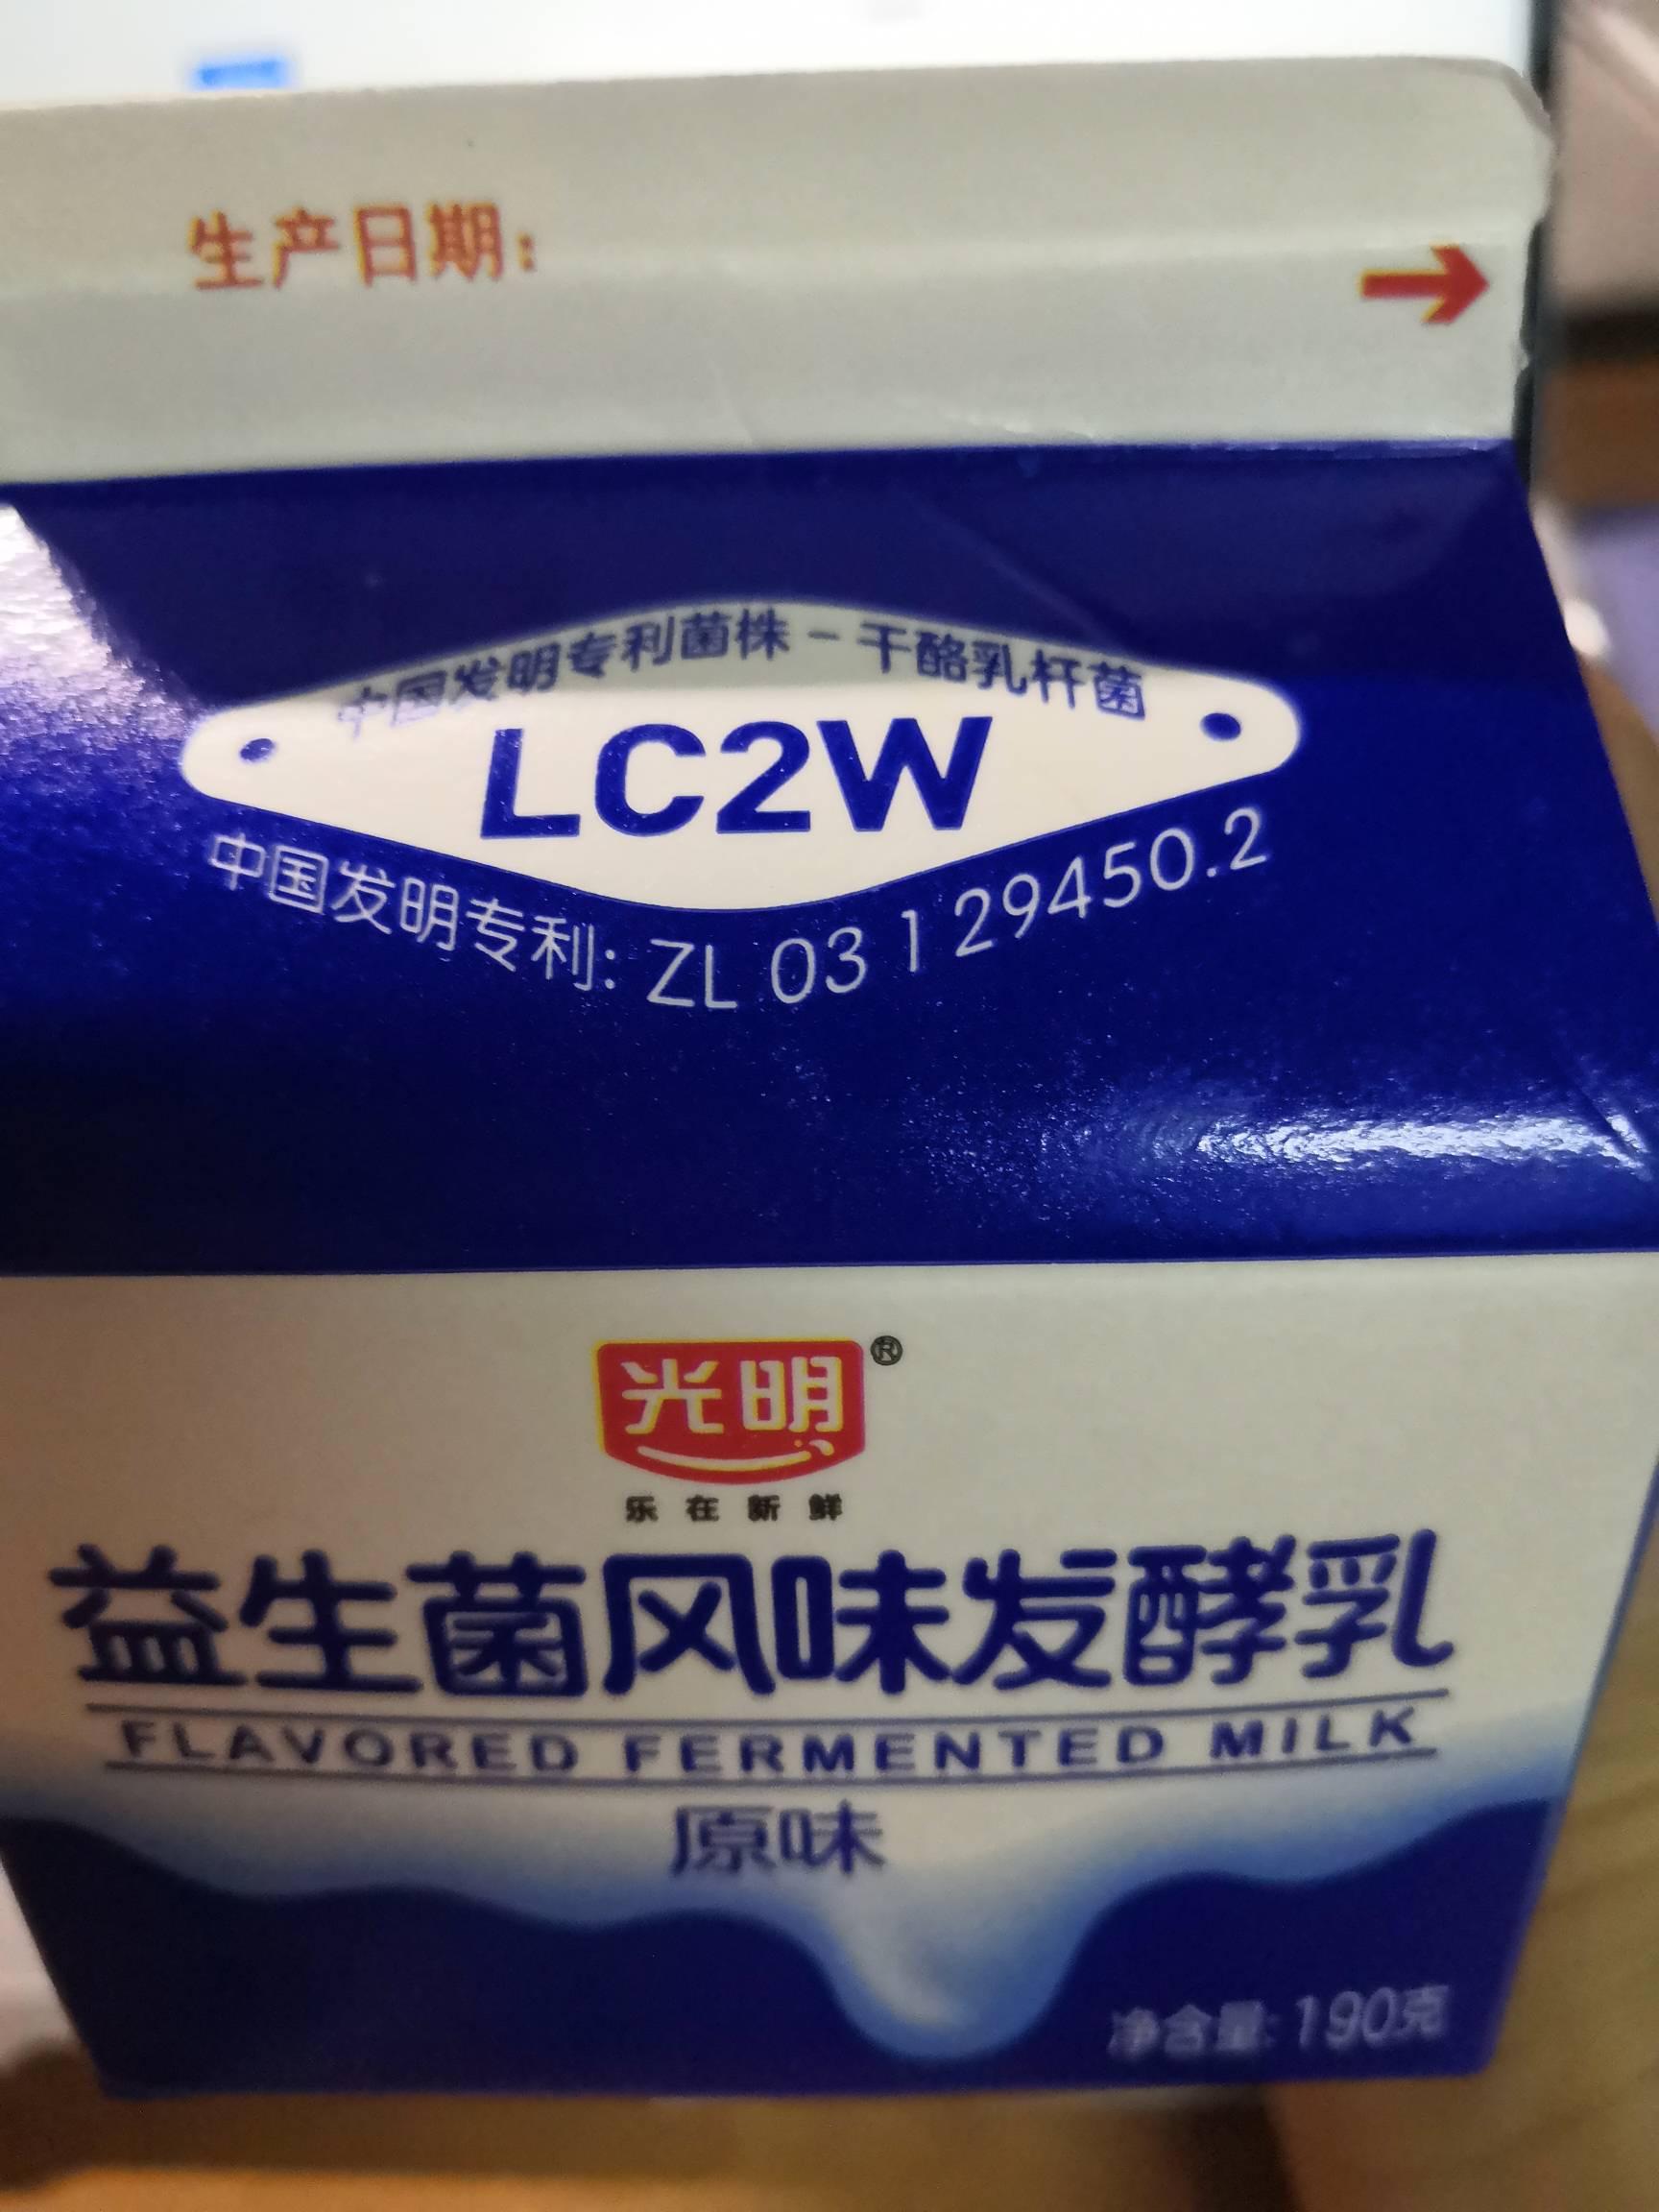 光明原味风味发酵乳的热量和减肥功效